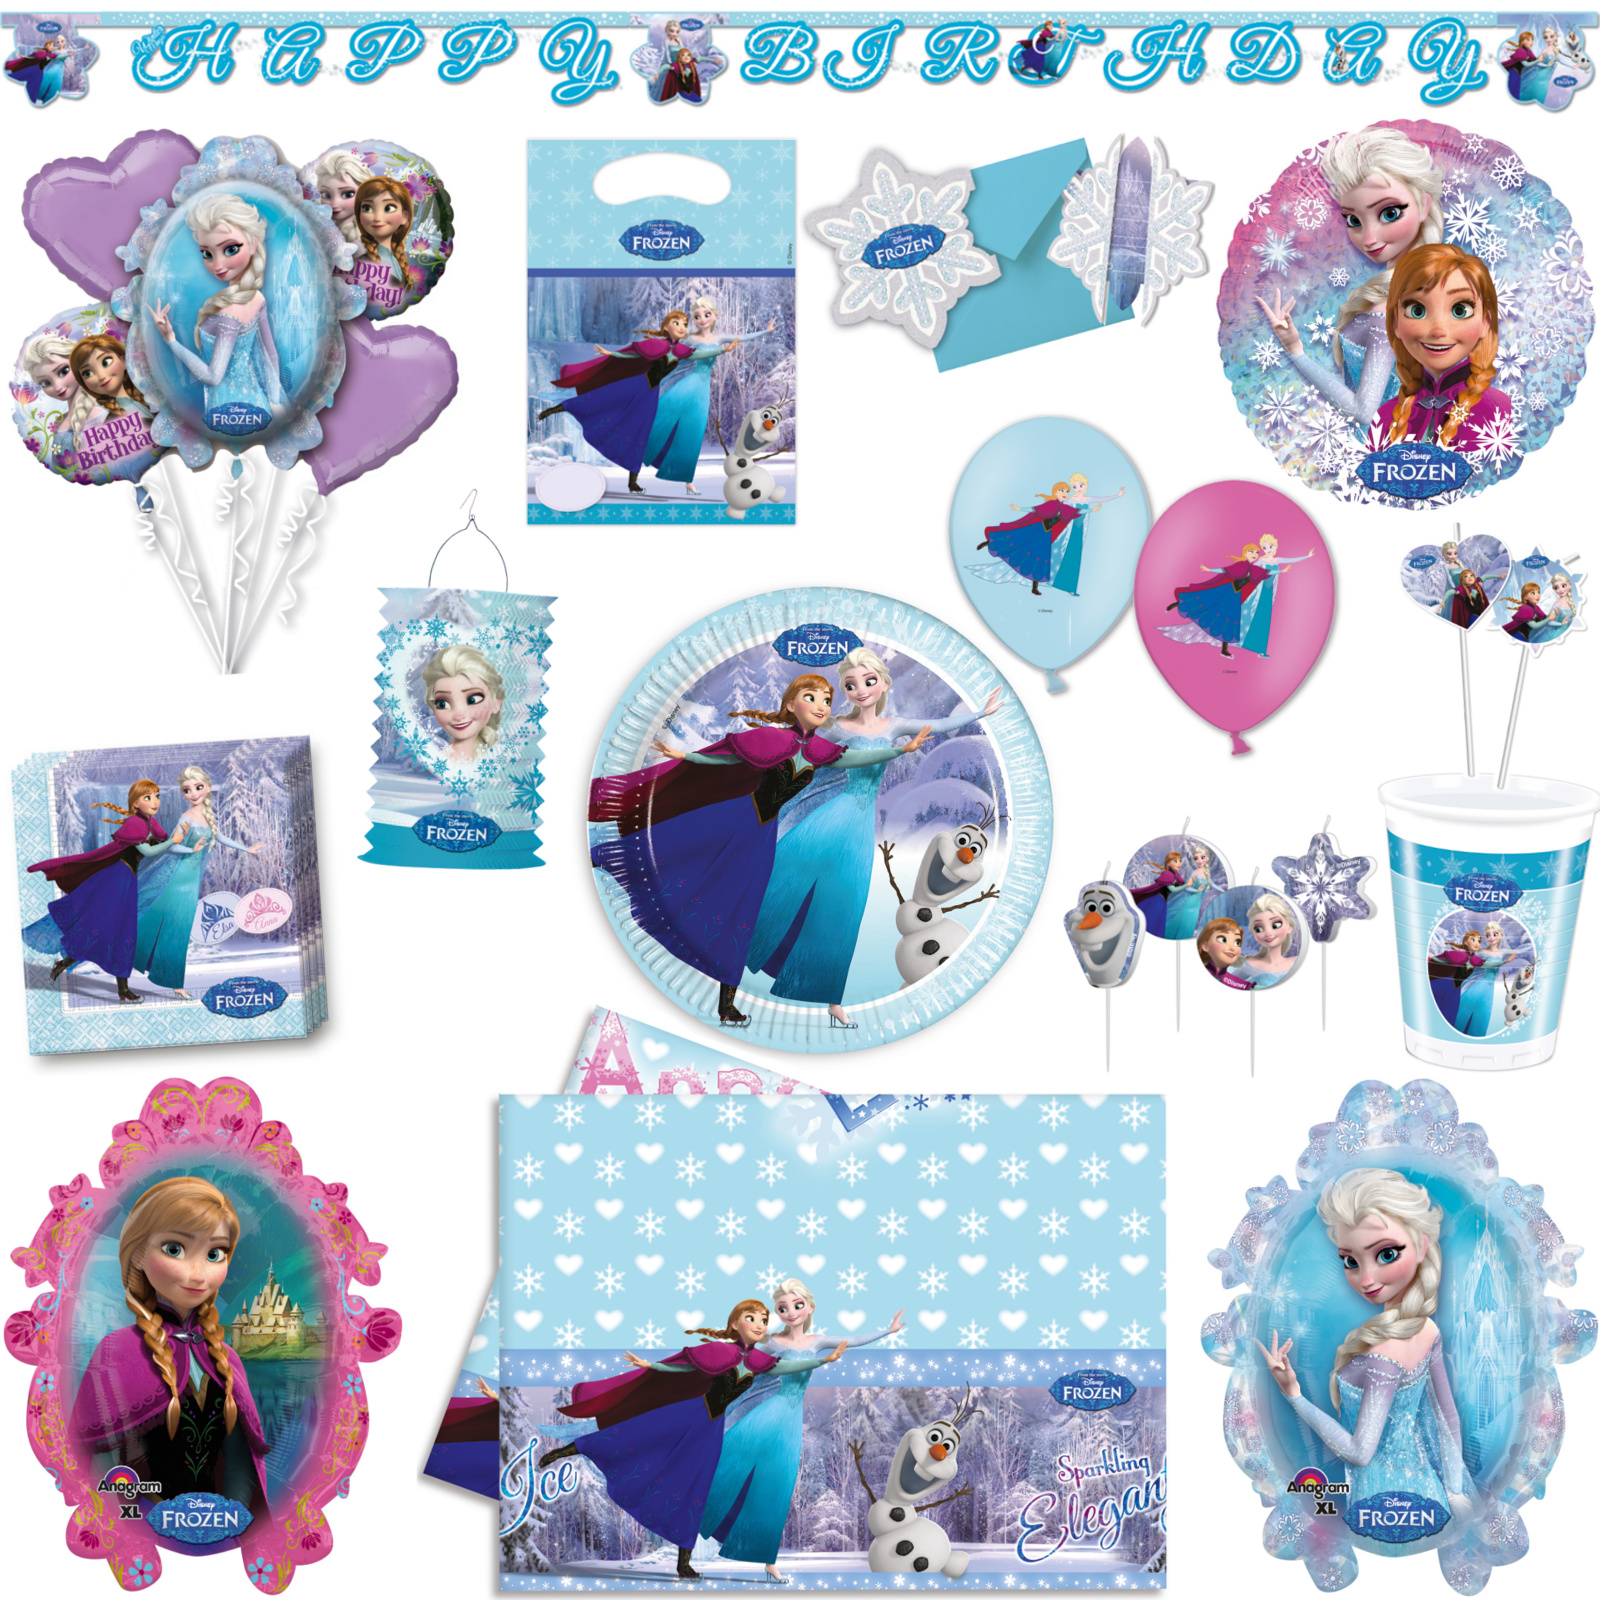 Die Eiskönigin Anna & Elsa Snowflake Partyset 37 Teile für 8 Kinder